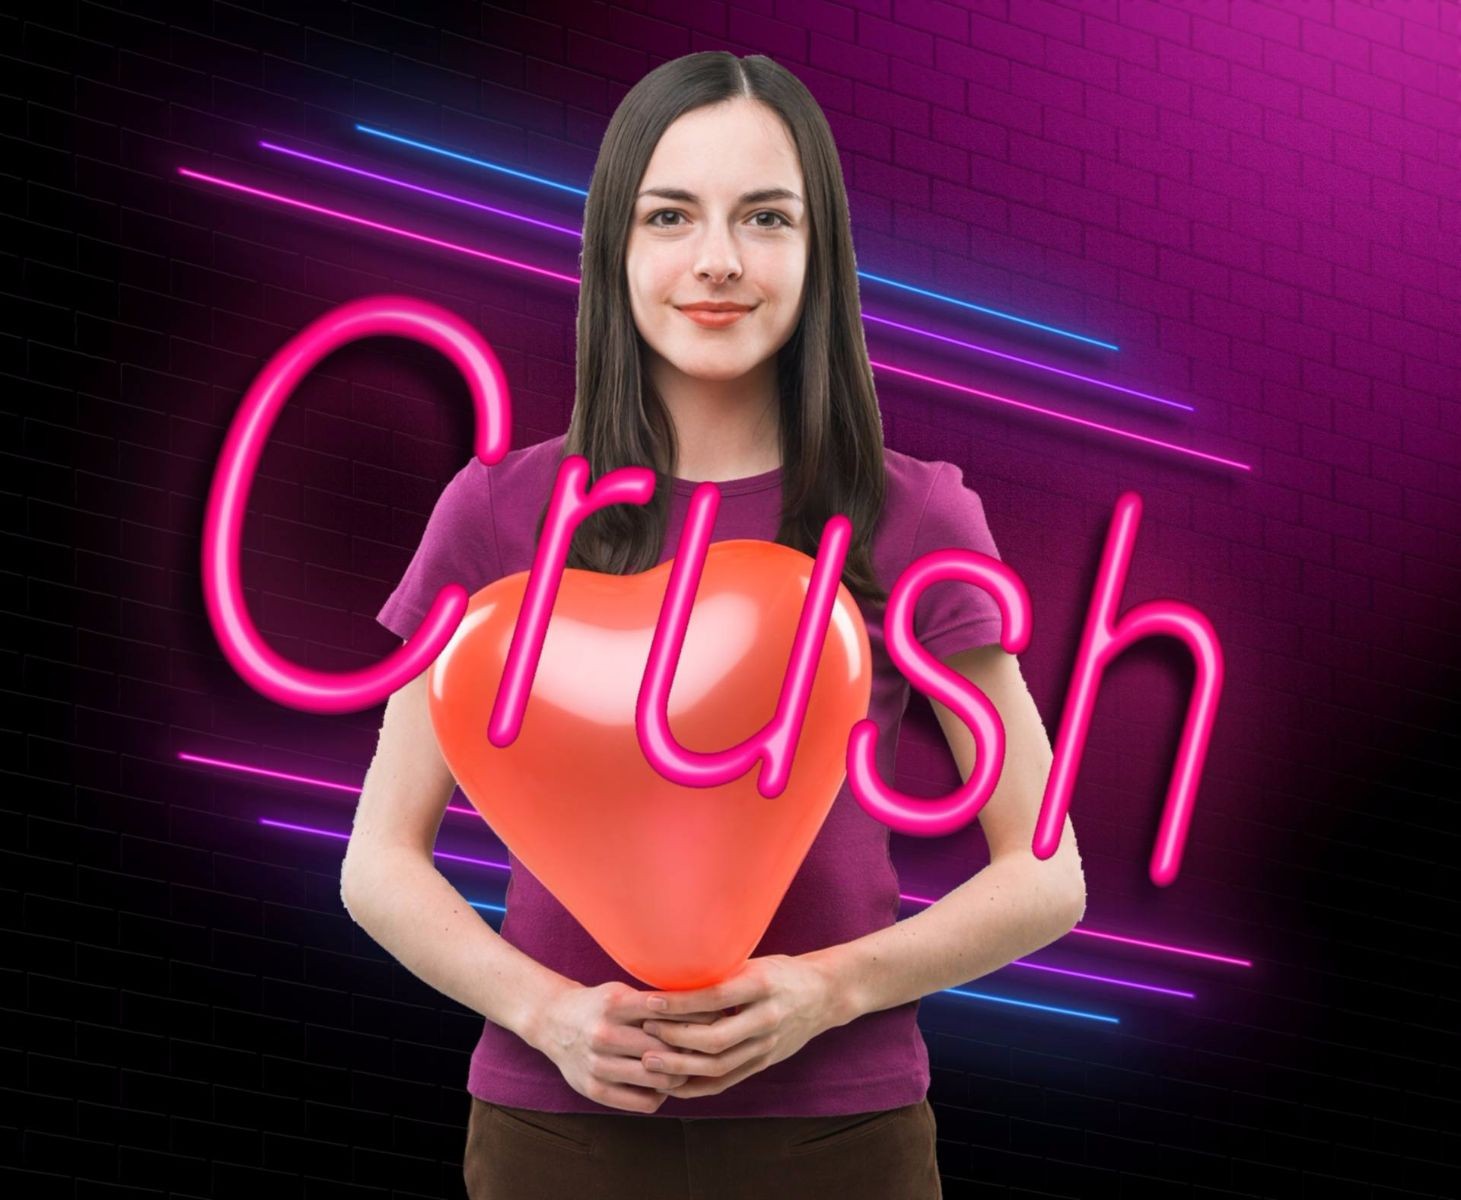 Mujer con globo en forma de corazón y la palabra "CRUSH" enfrente